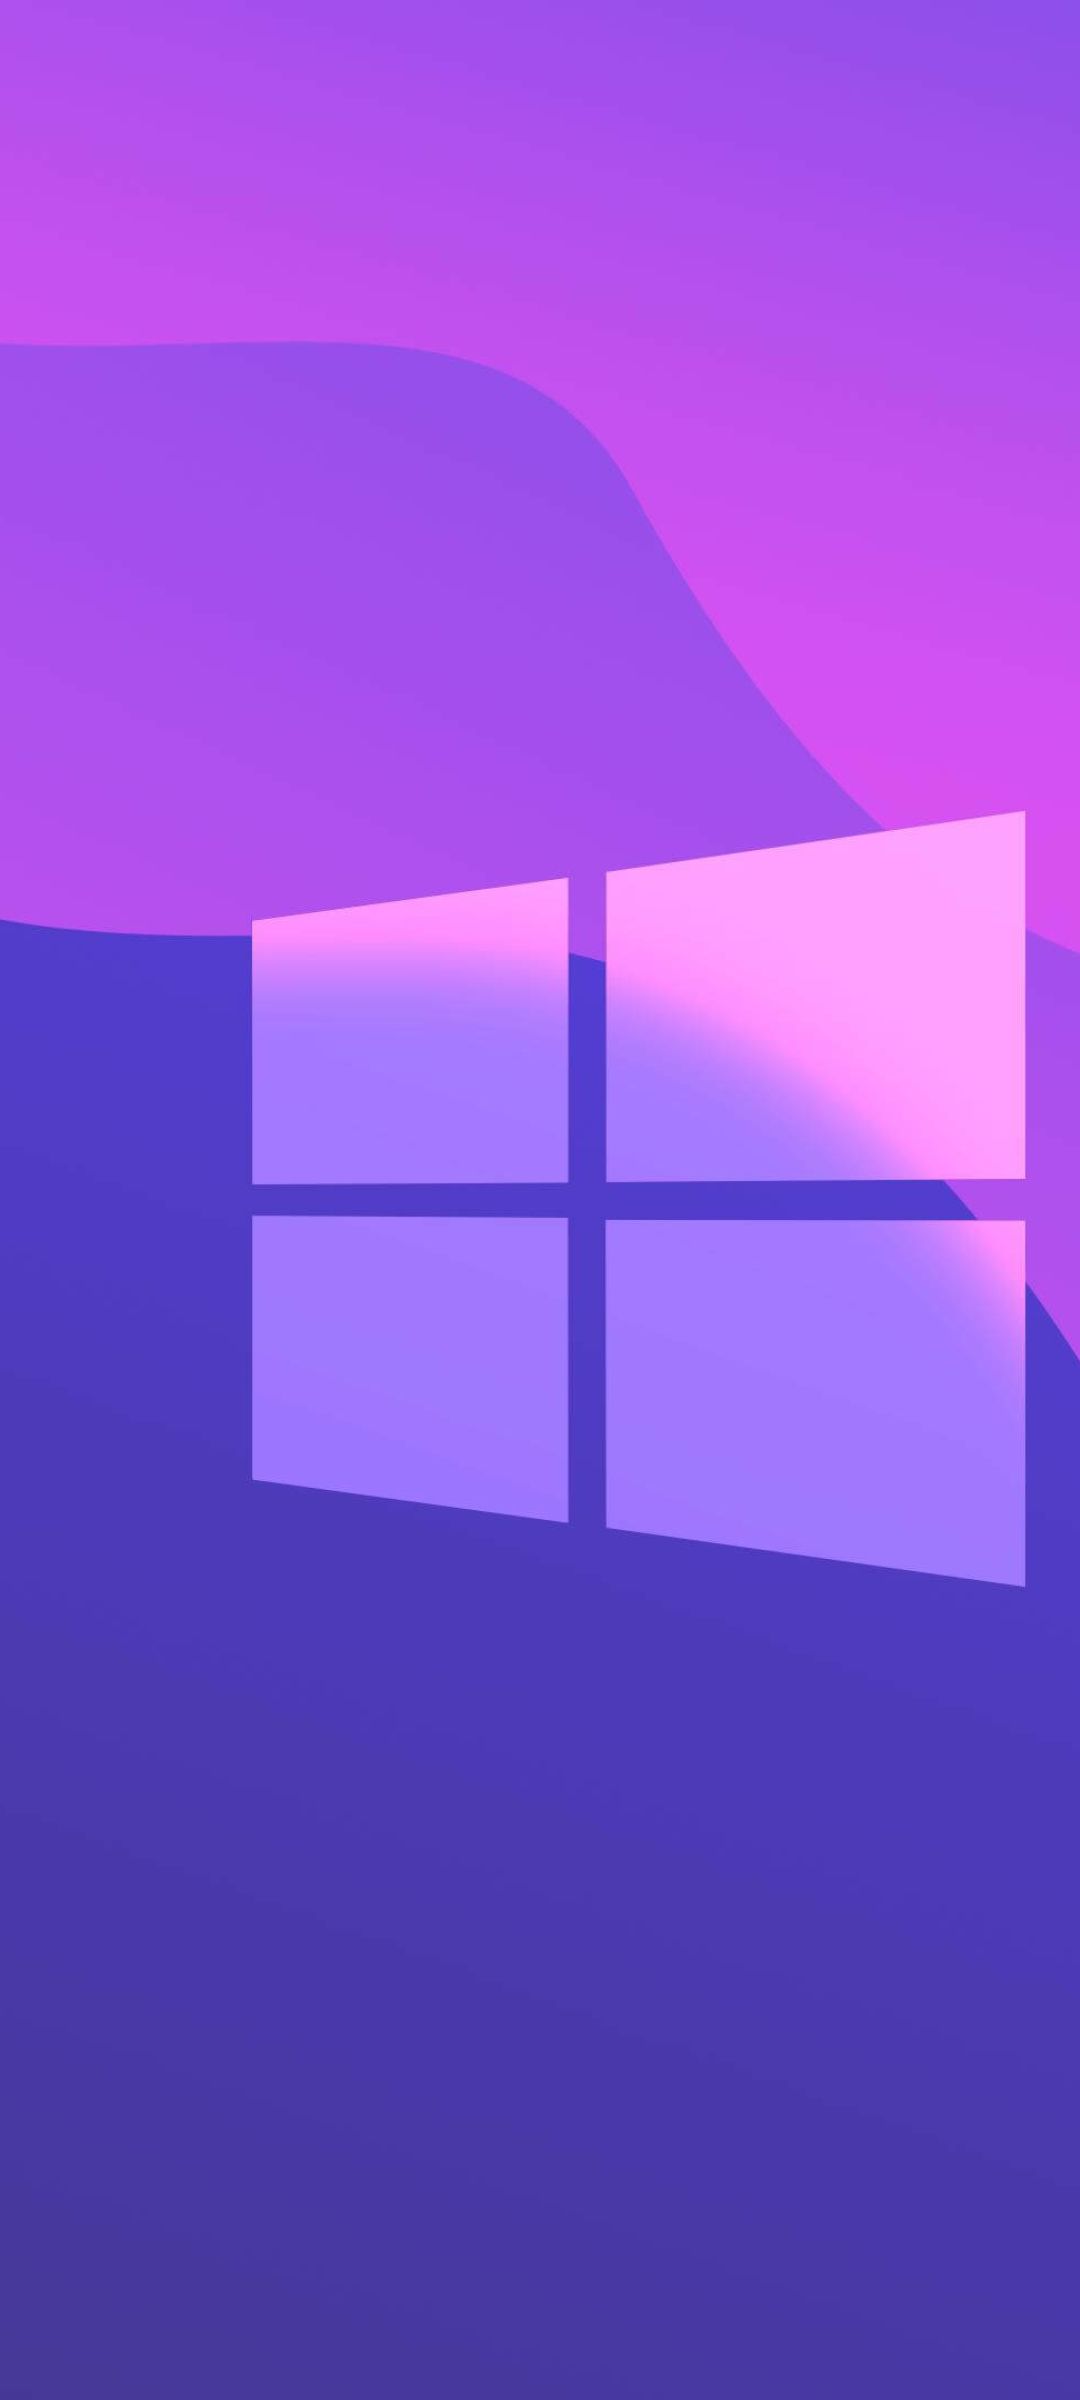 1080x2400 Windows 10 Purple Gradient 1080x2400 Resolution Wallpaper, HD ...